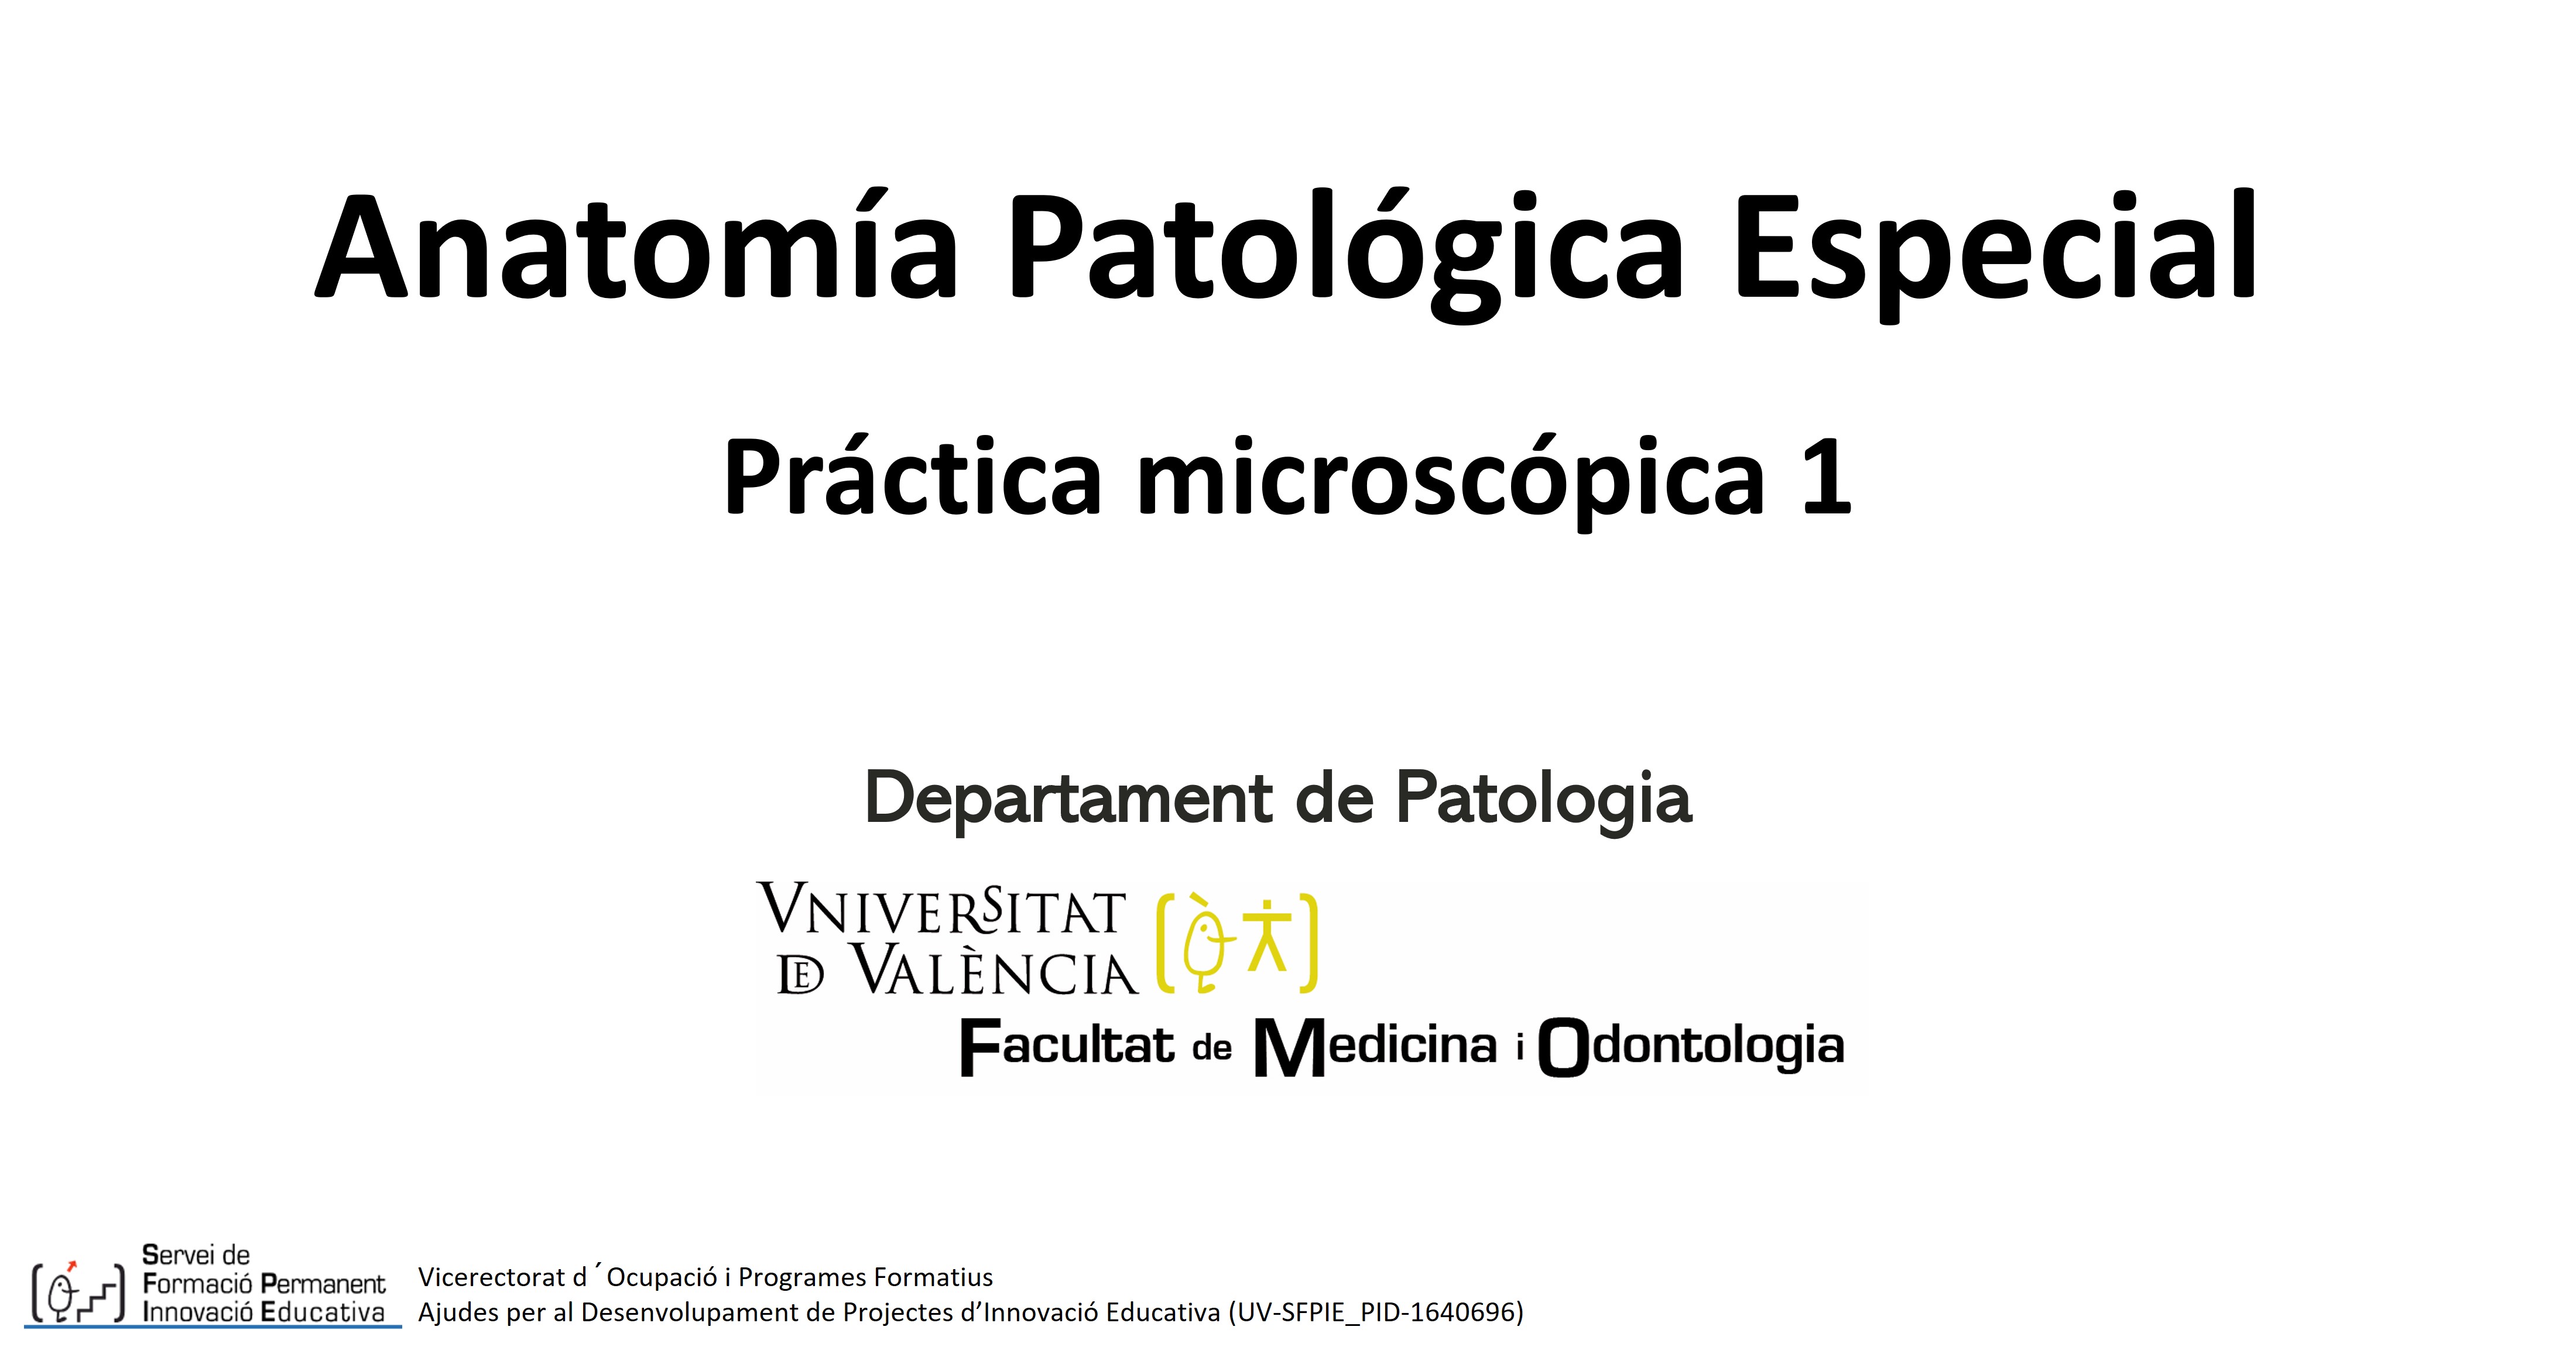 Anatomía Patológica Especial - Práctica Microscópica 1